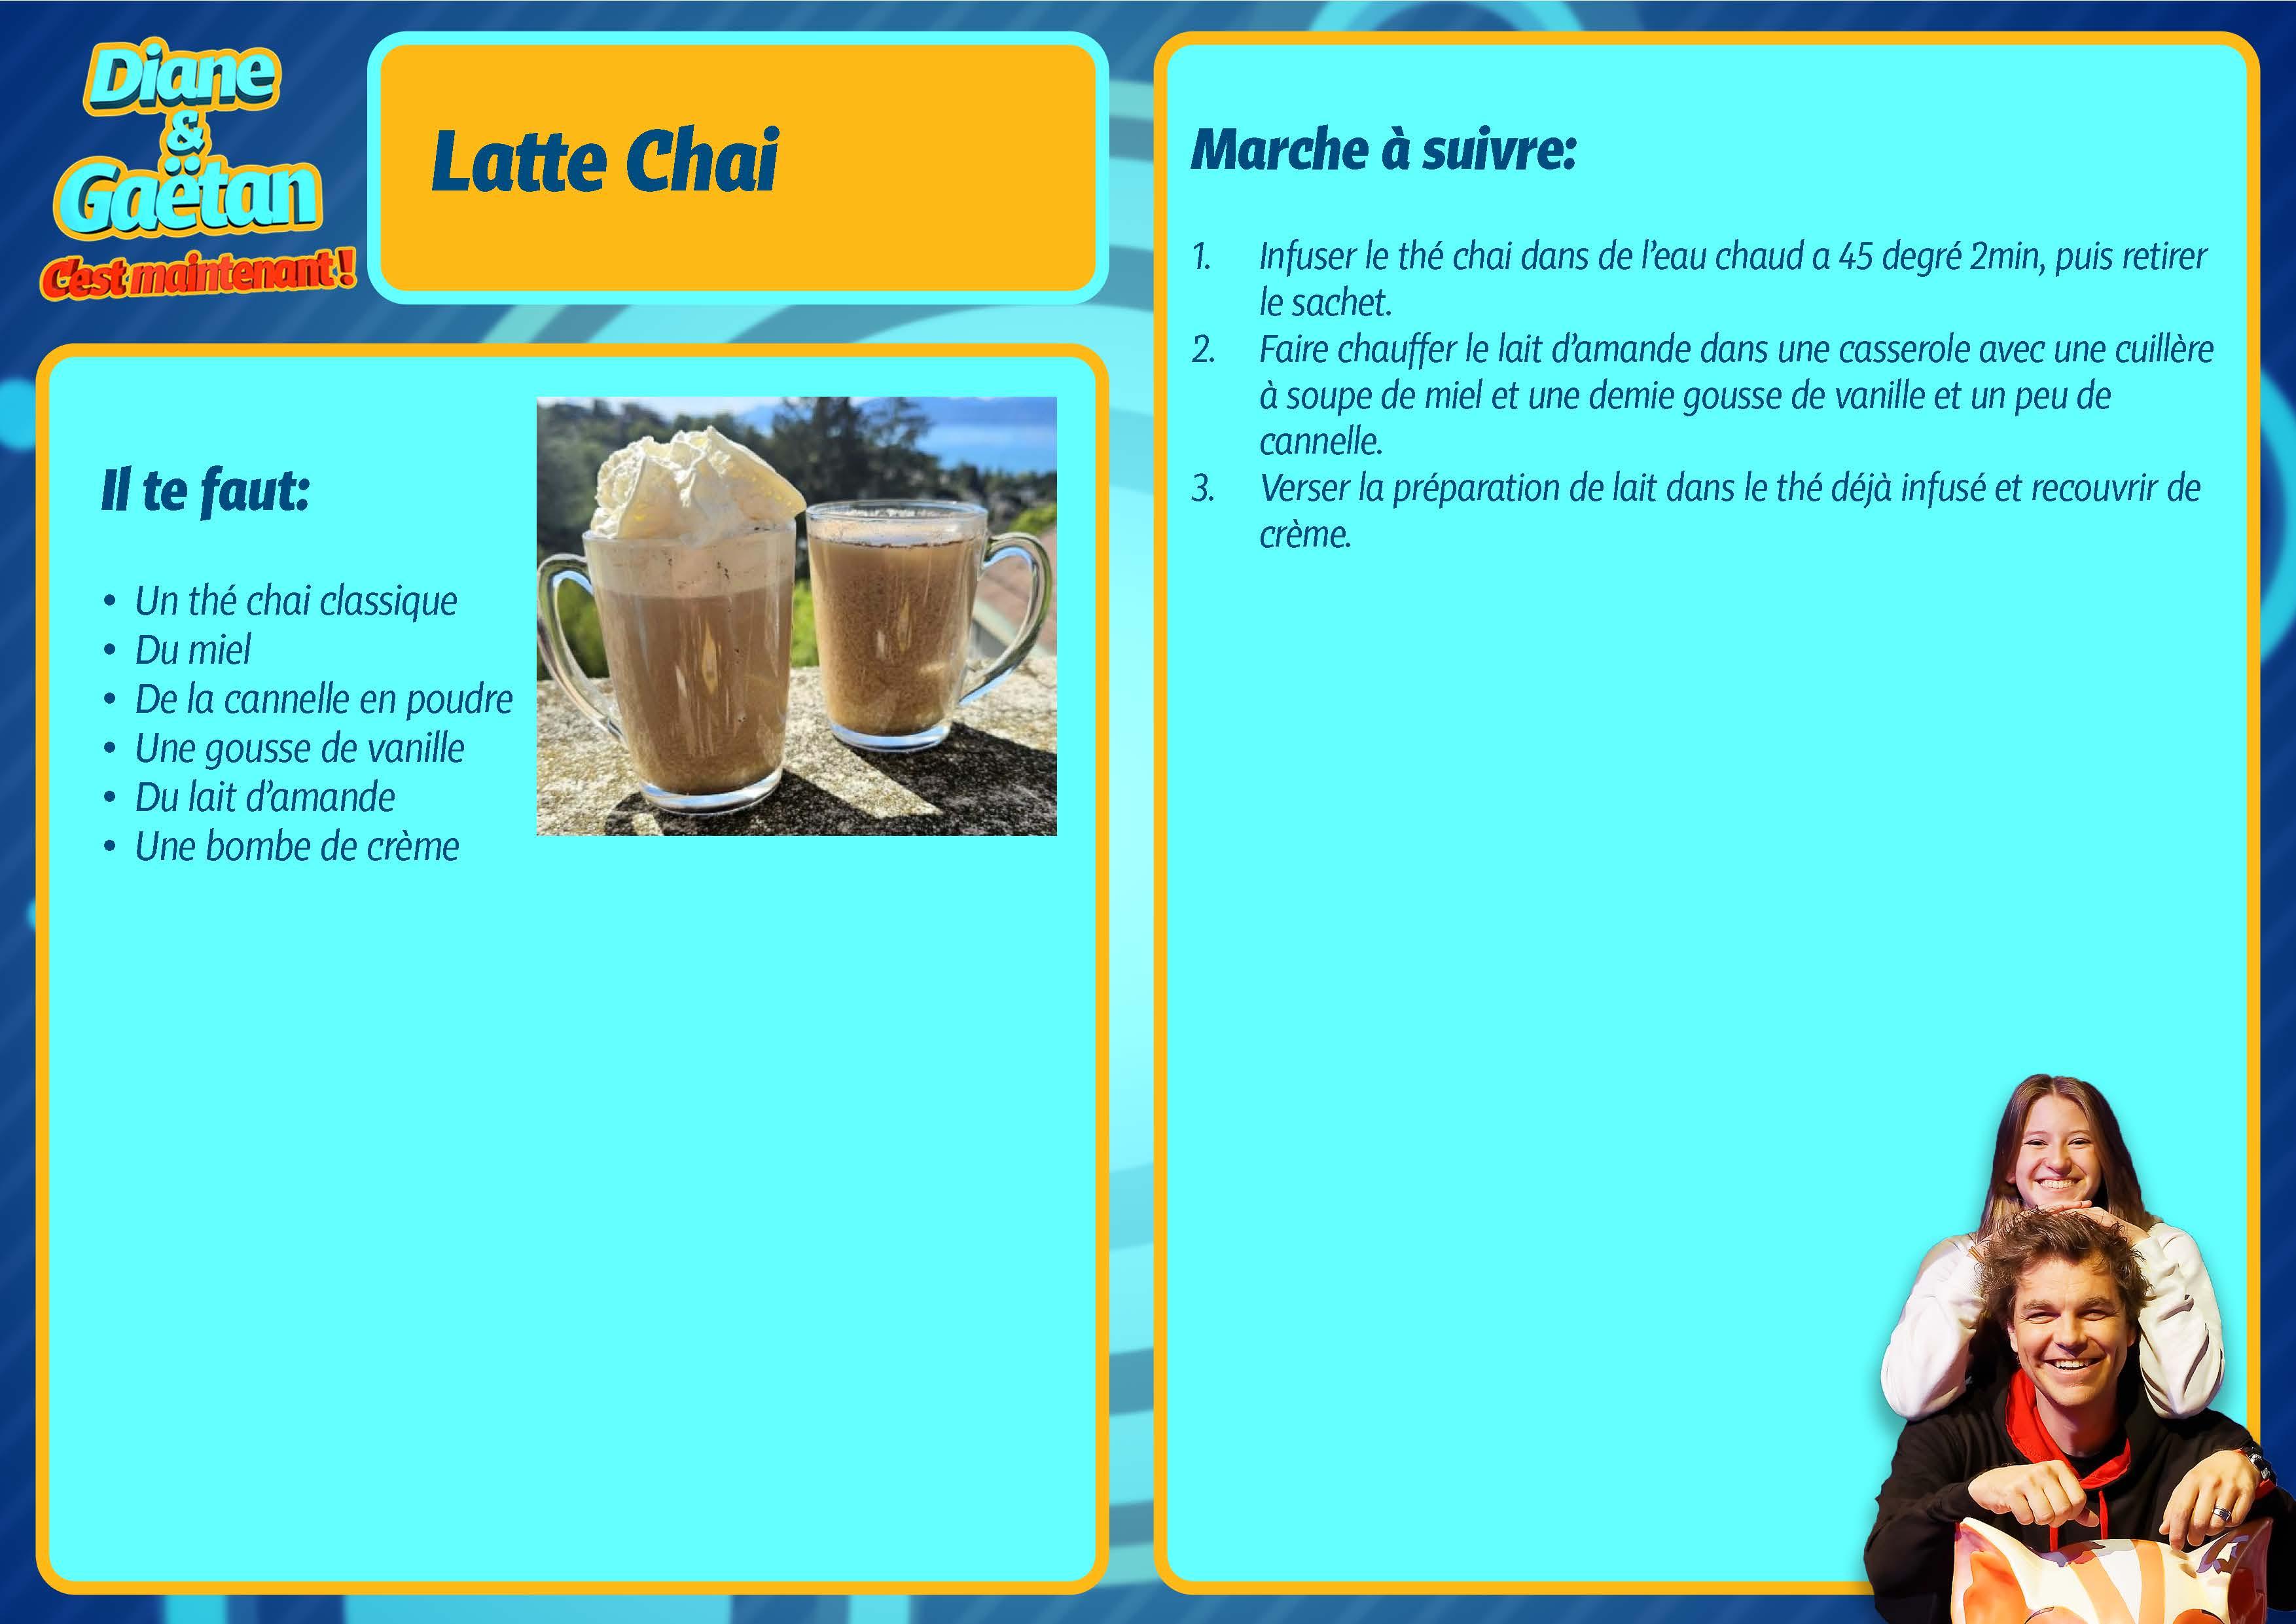 Latte Chai. [RTS]